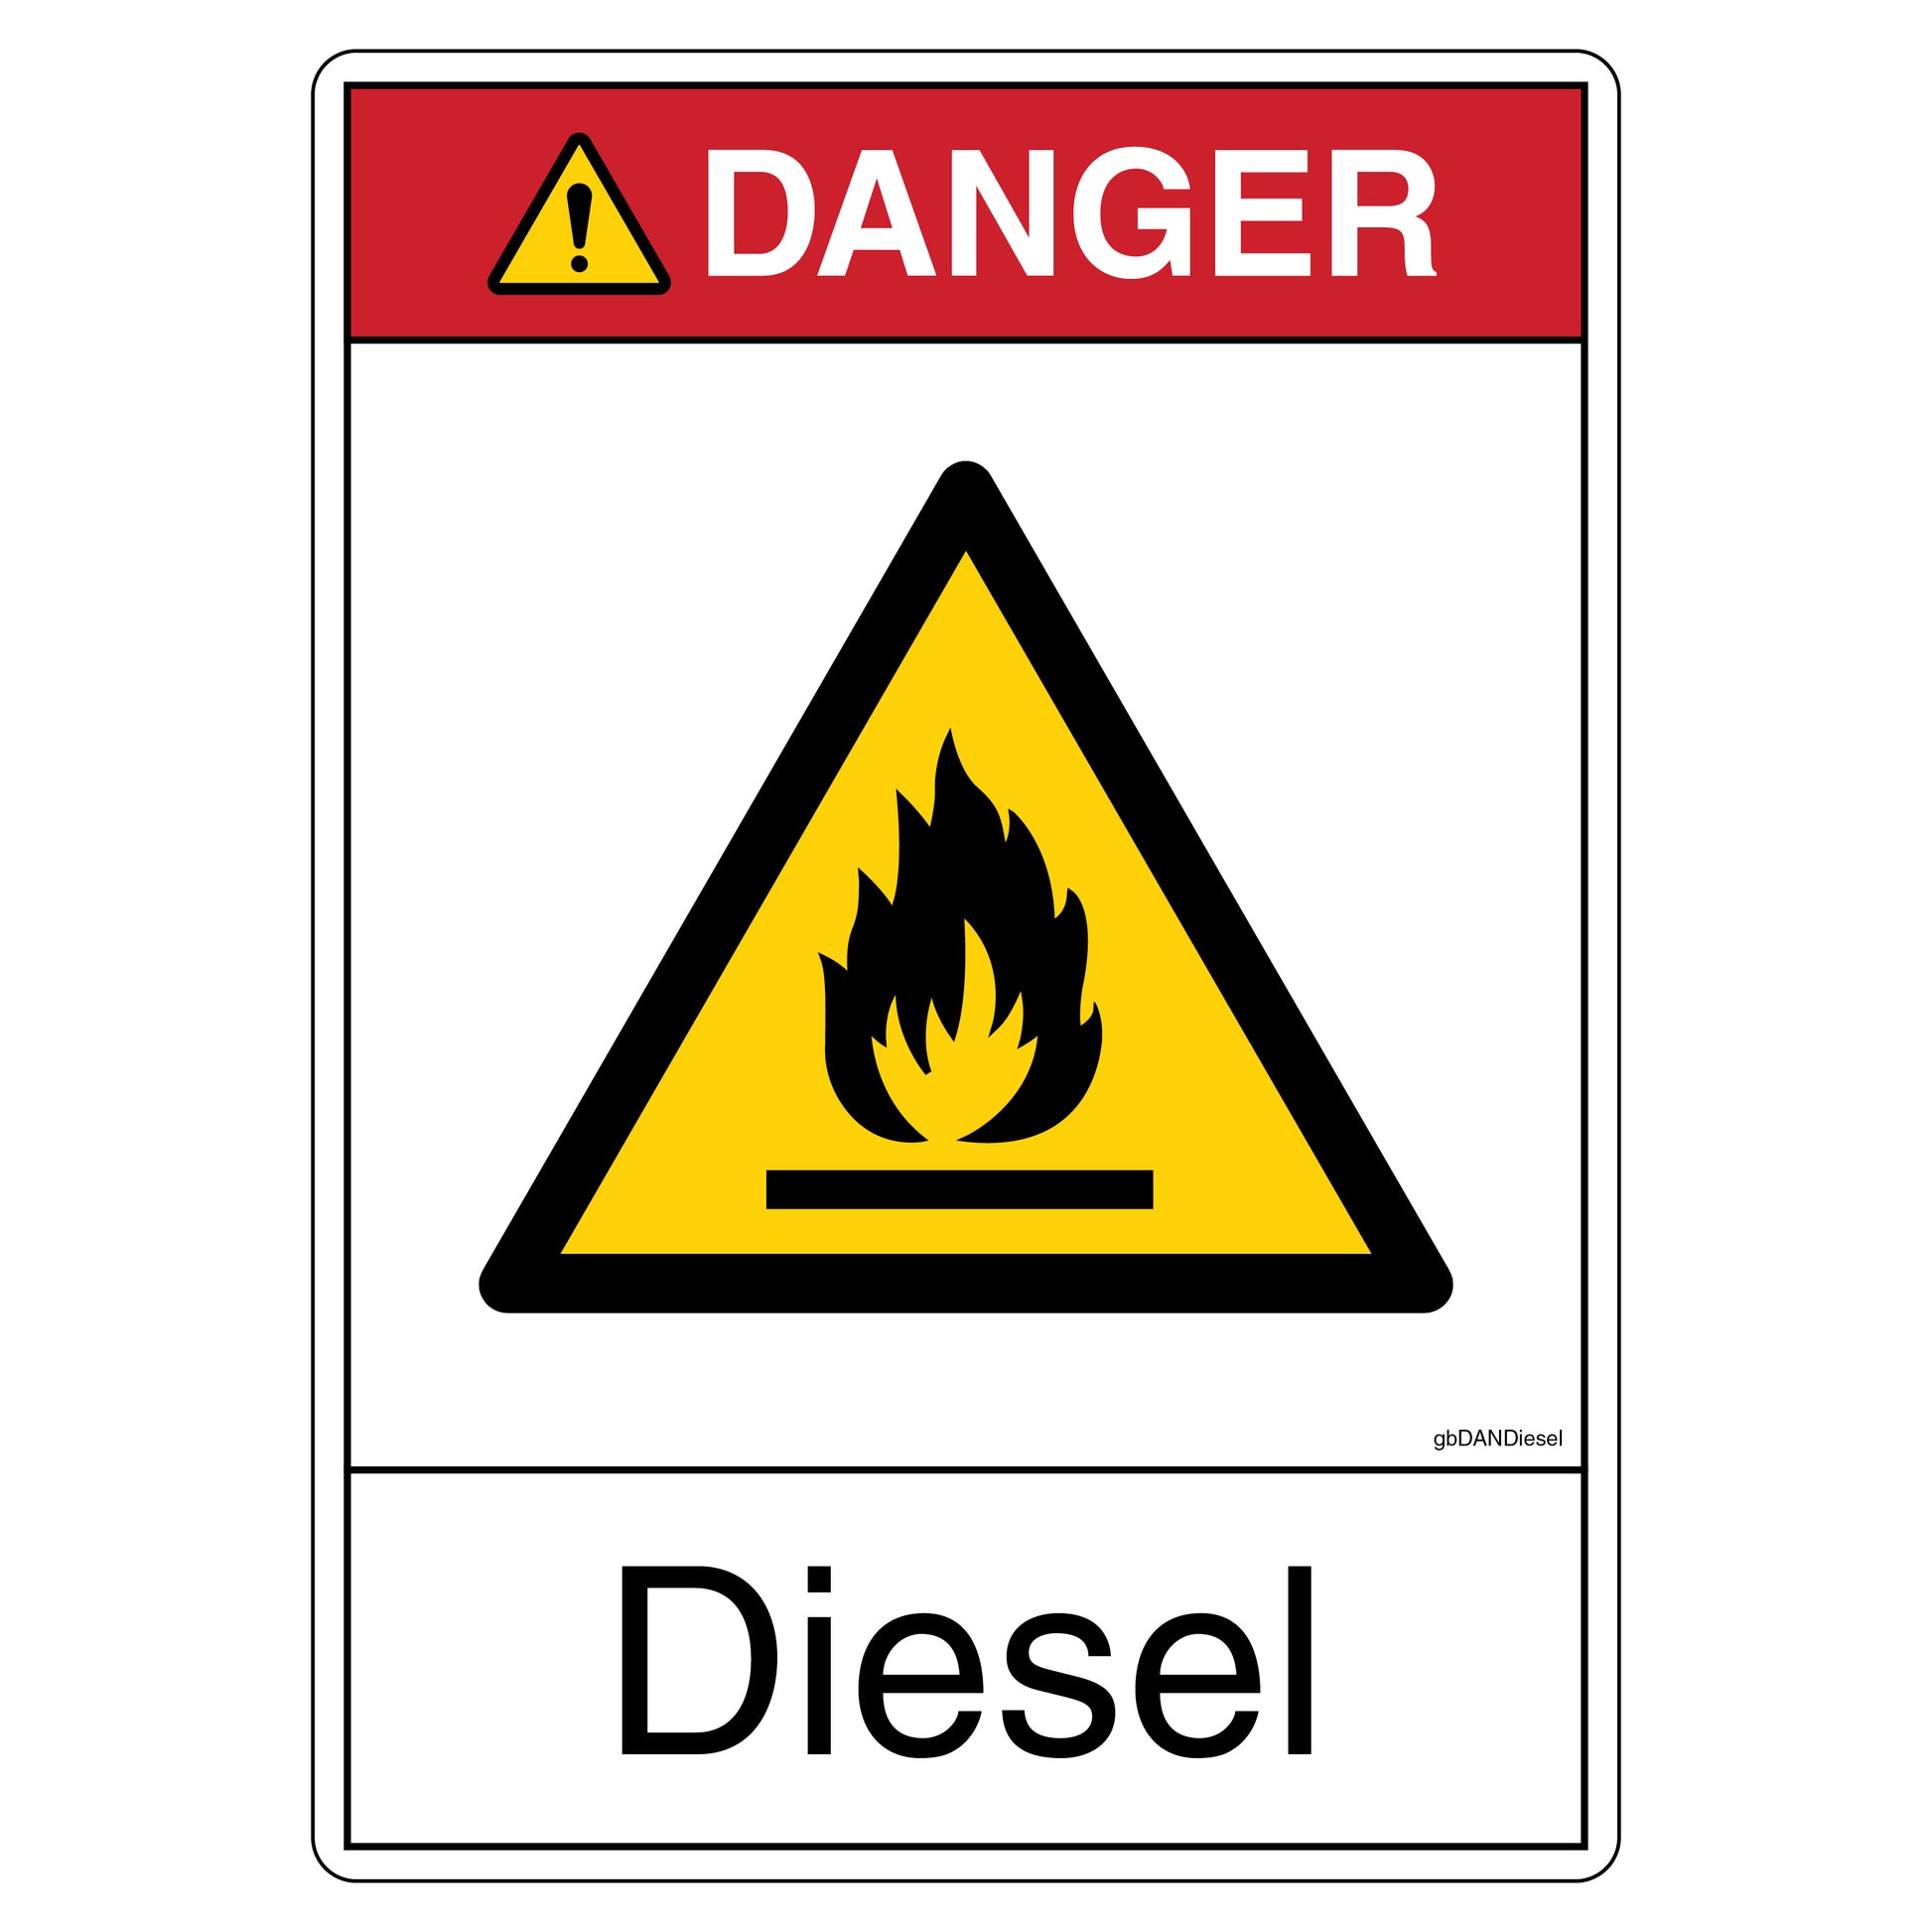 Danger Diesel Decal.